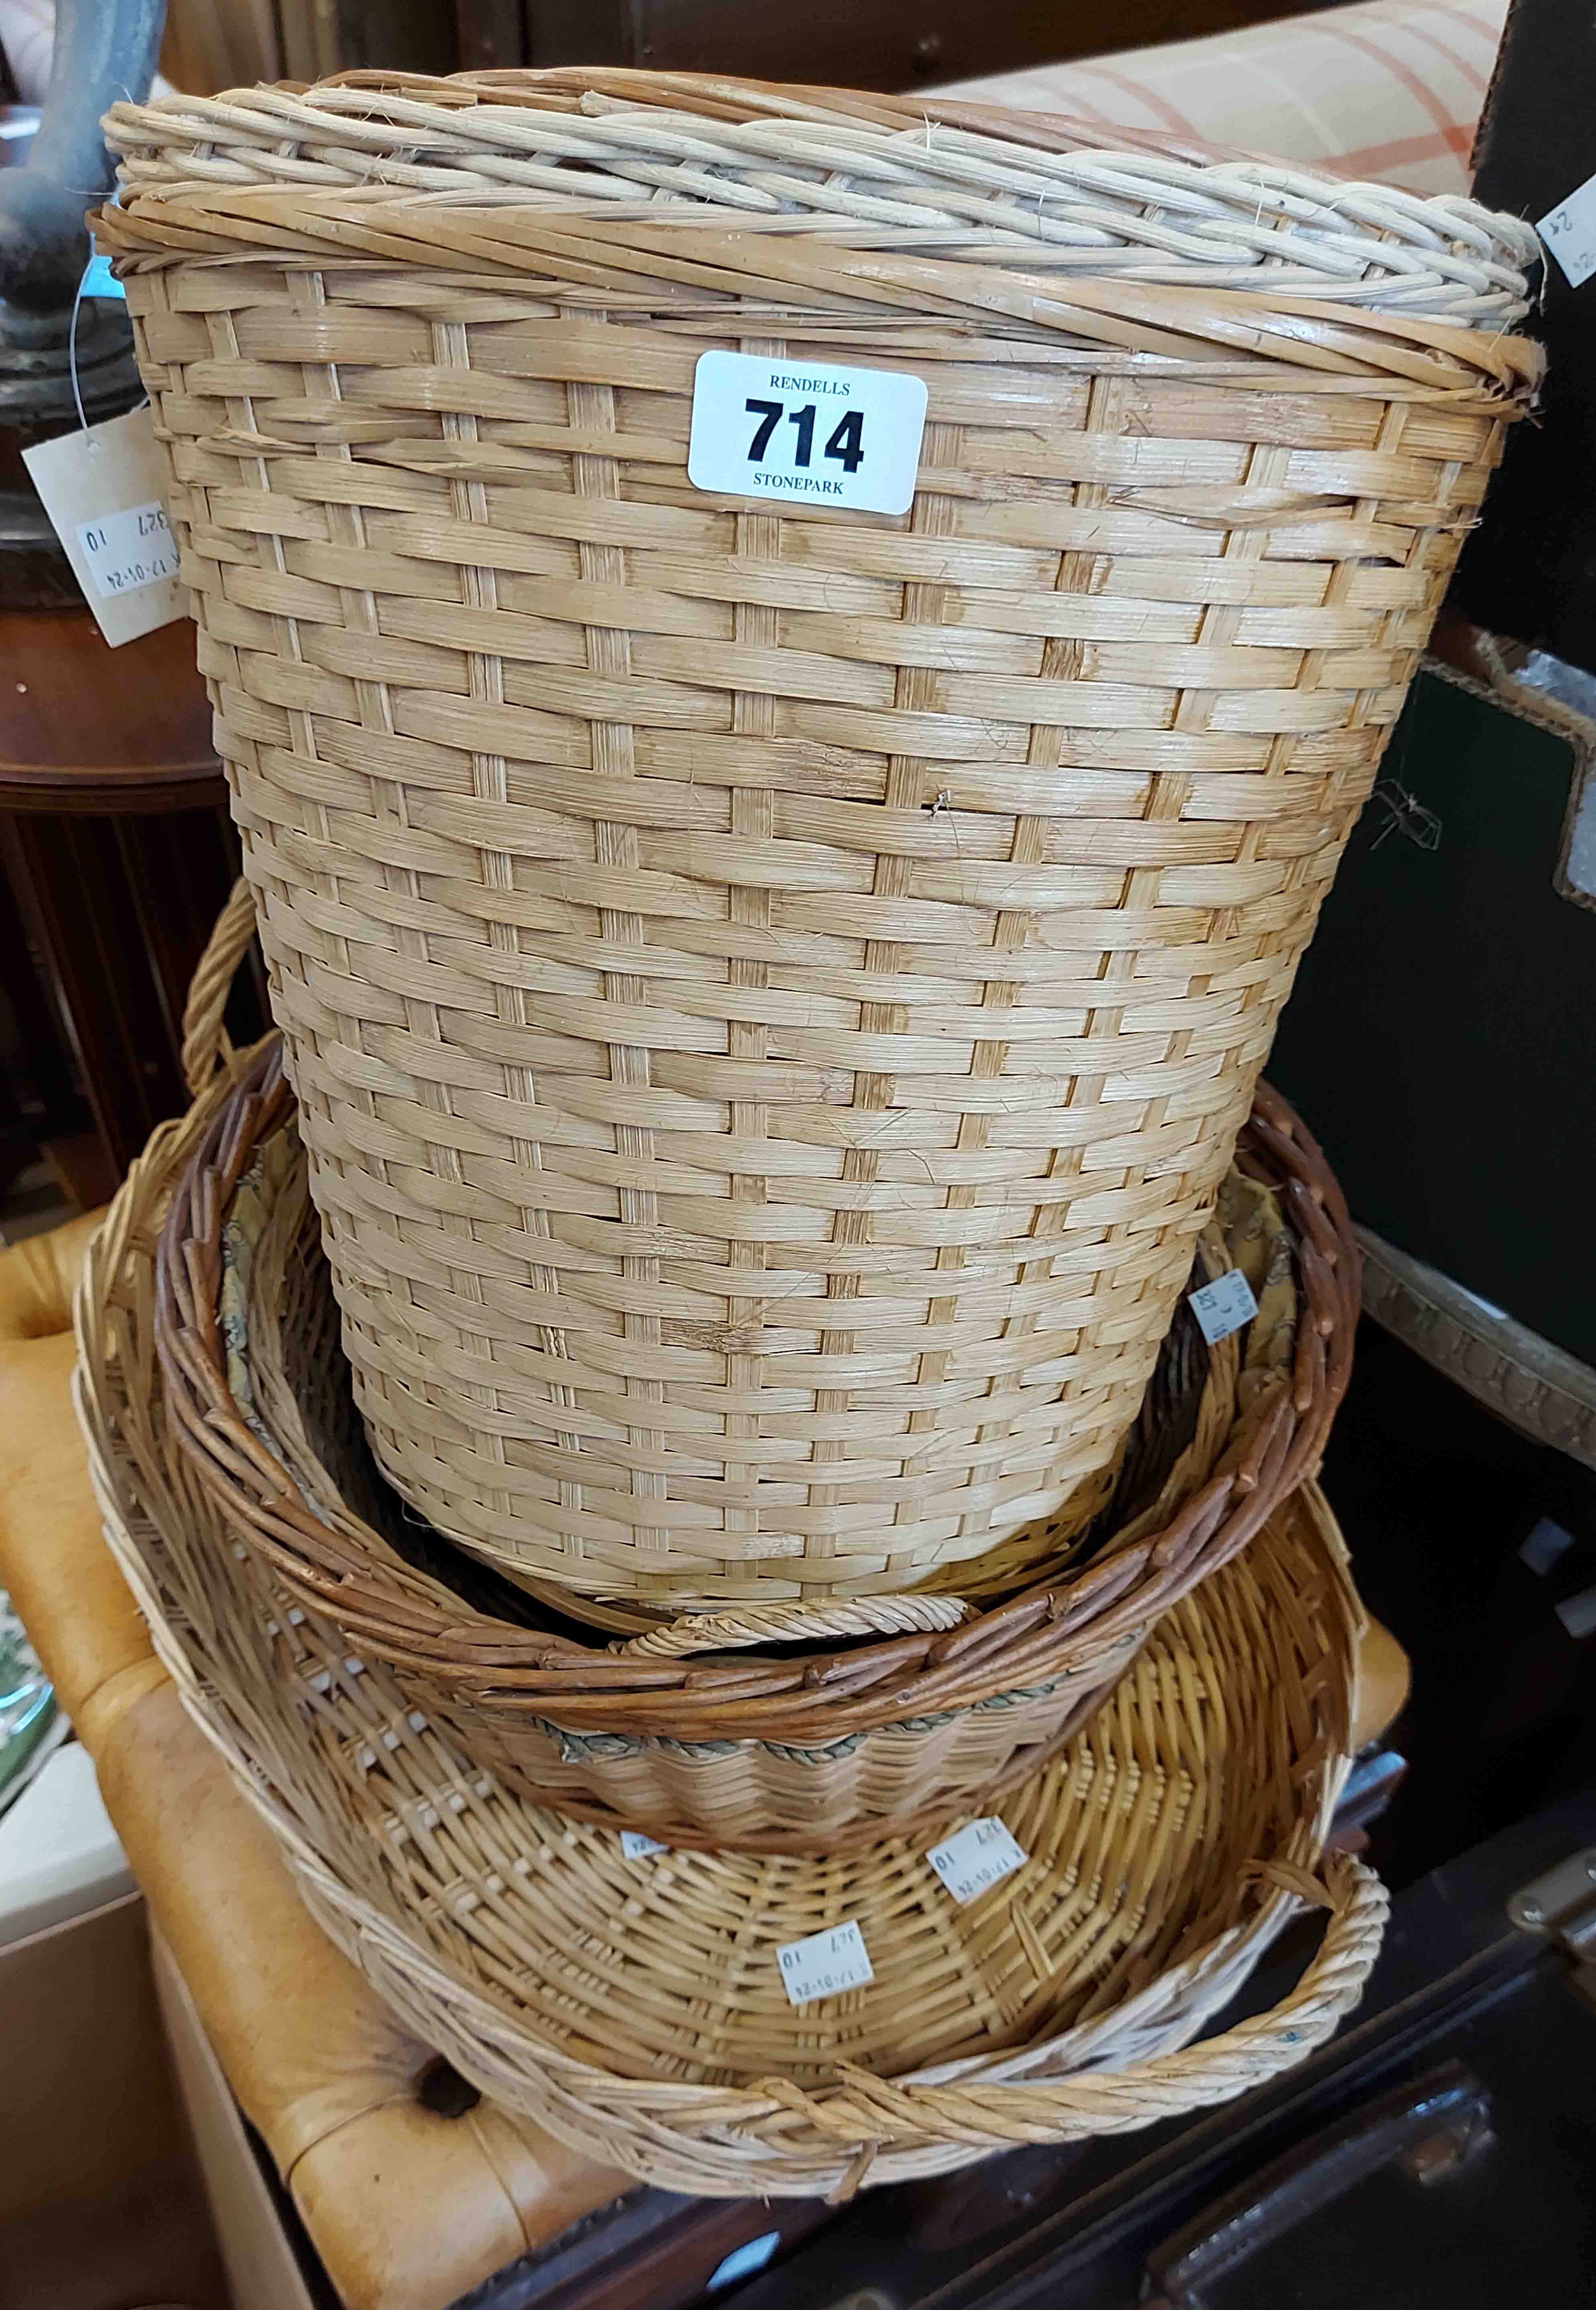 Six assorted wicker baskets